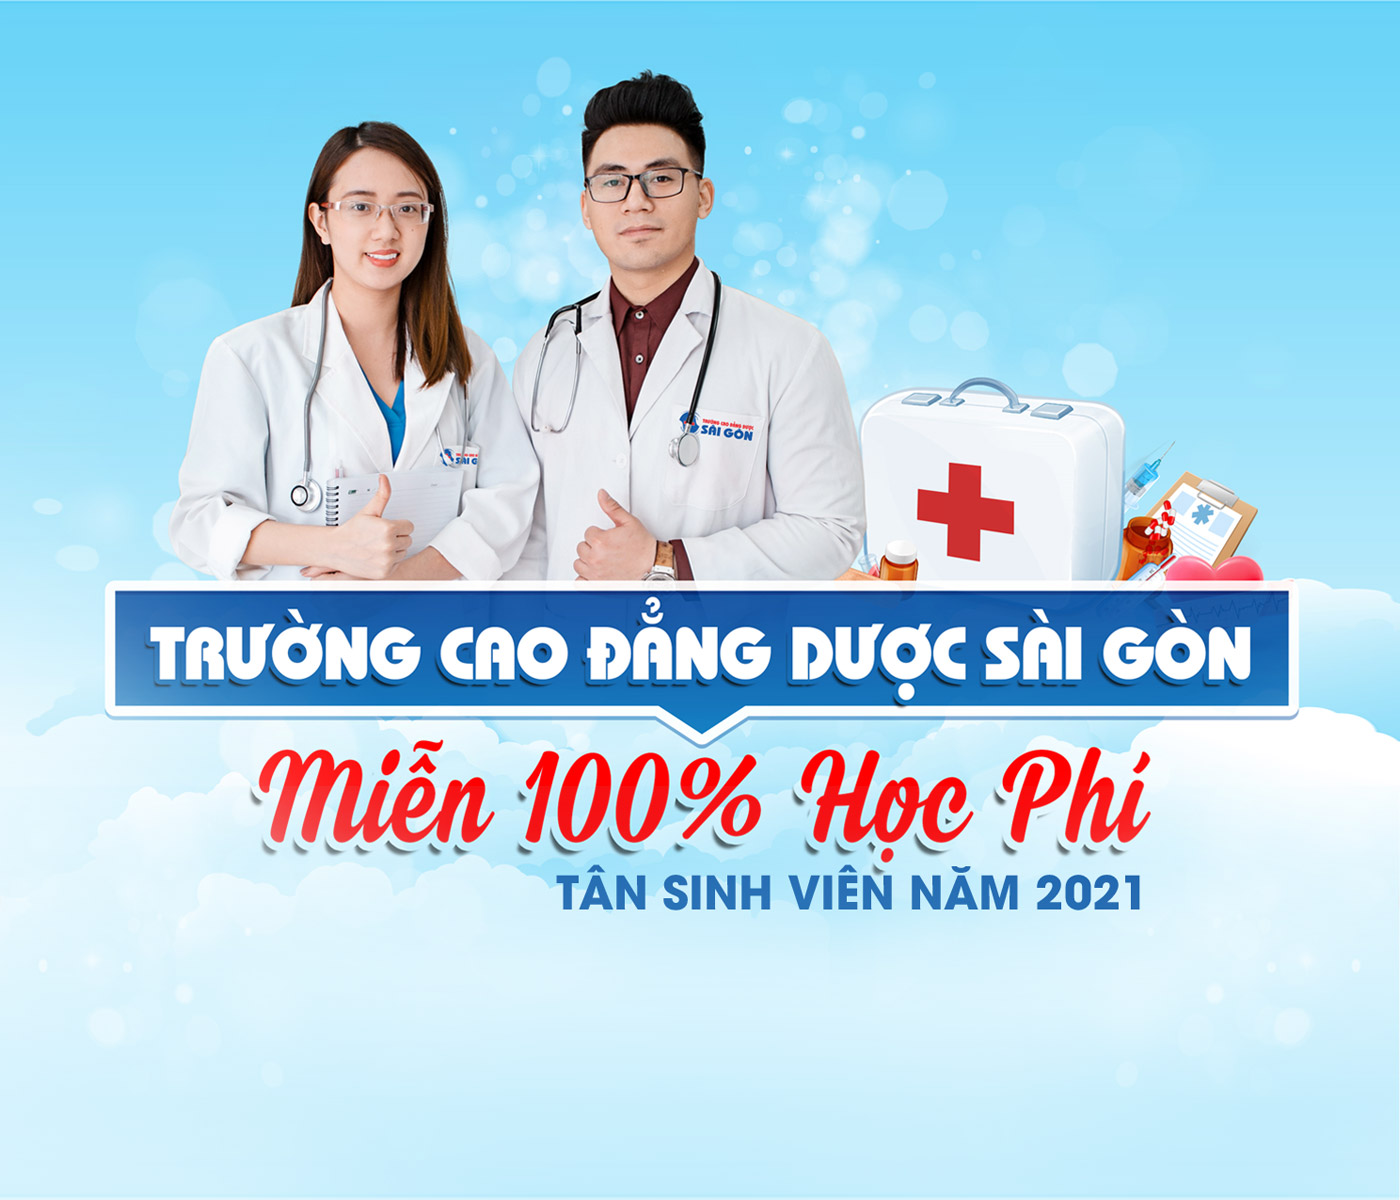 Trường Cao đẳng Dược Sài Gòn miễn 100% học phí tân sinh viên năm 2021 - Ảnh 1